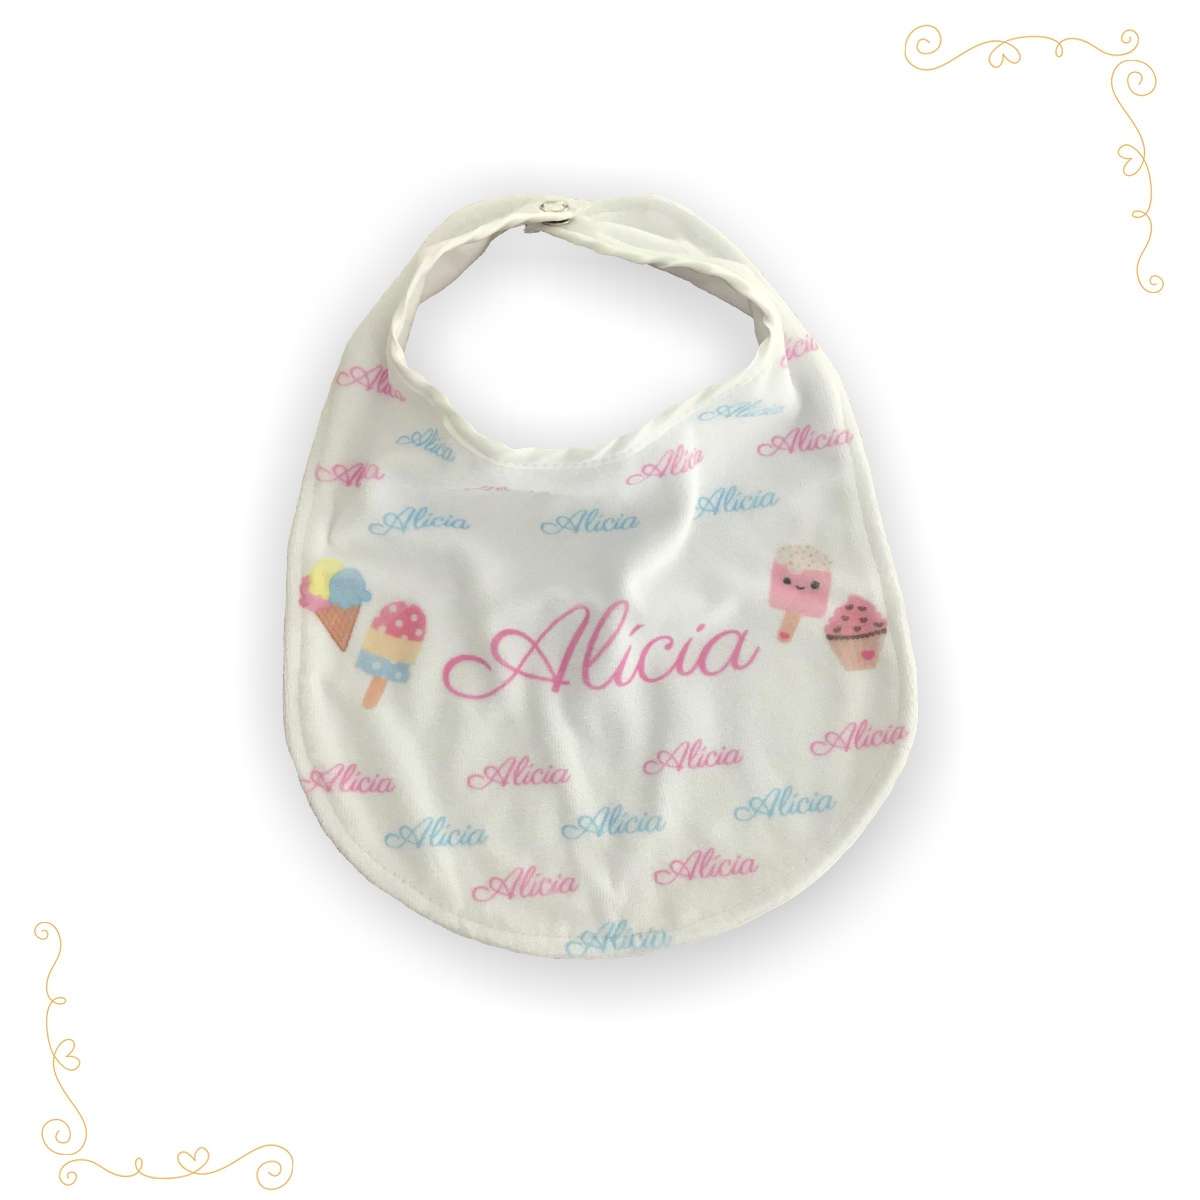 Um babador para bebês personalizado na cor branca e detalhes em rosa